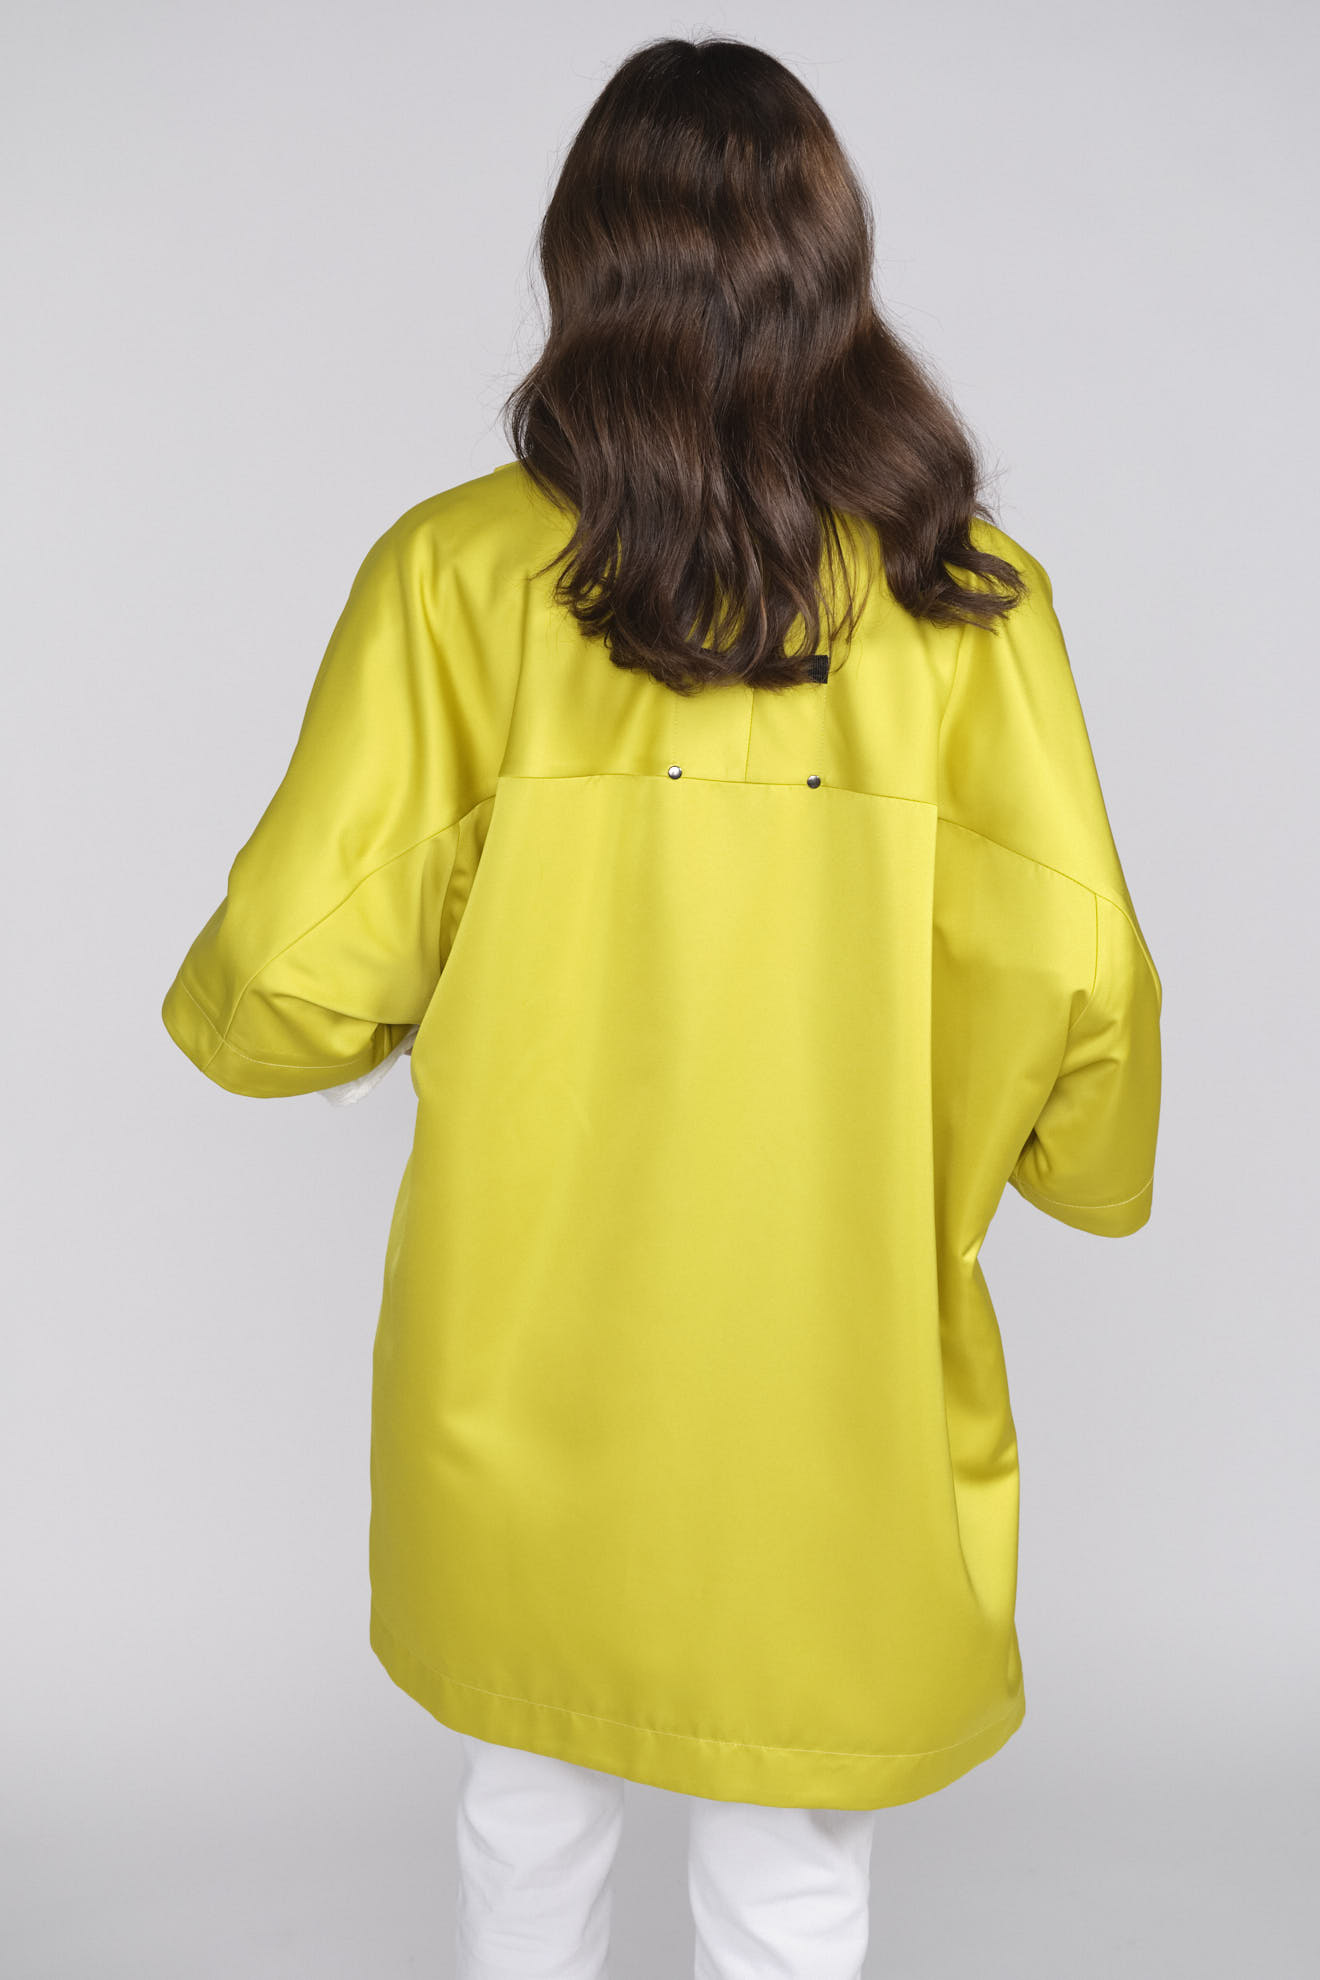 Ahirain Oversized Jacke mit Knopfleiste und Stehkragen gelb XS